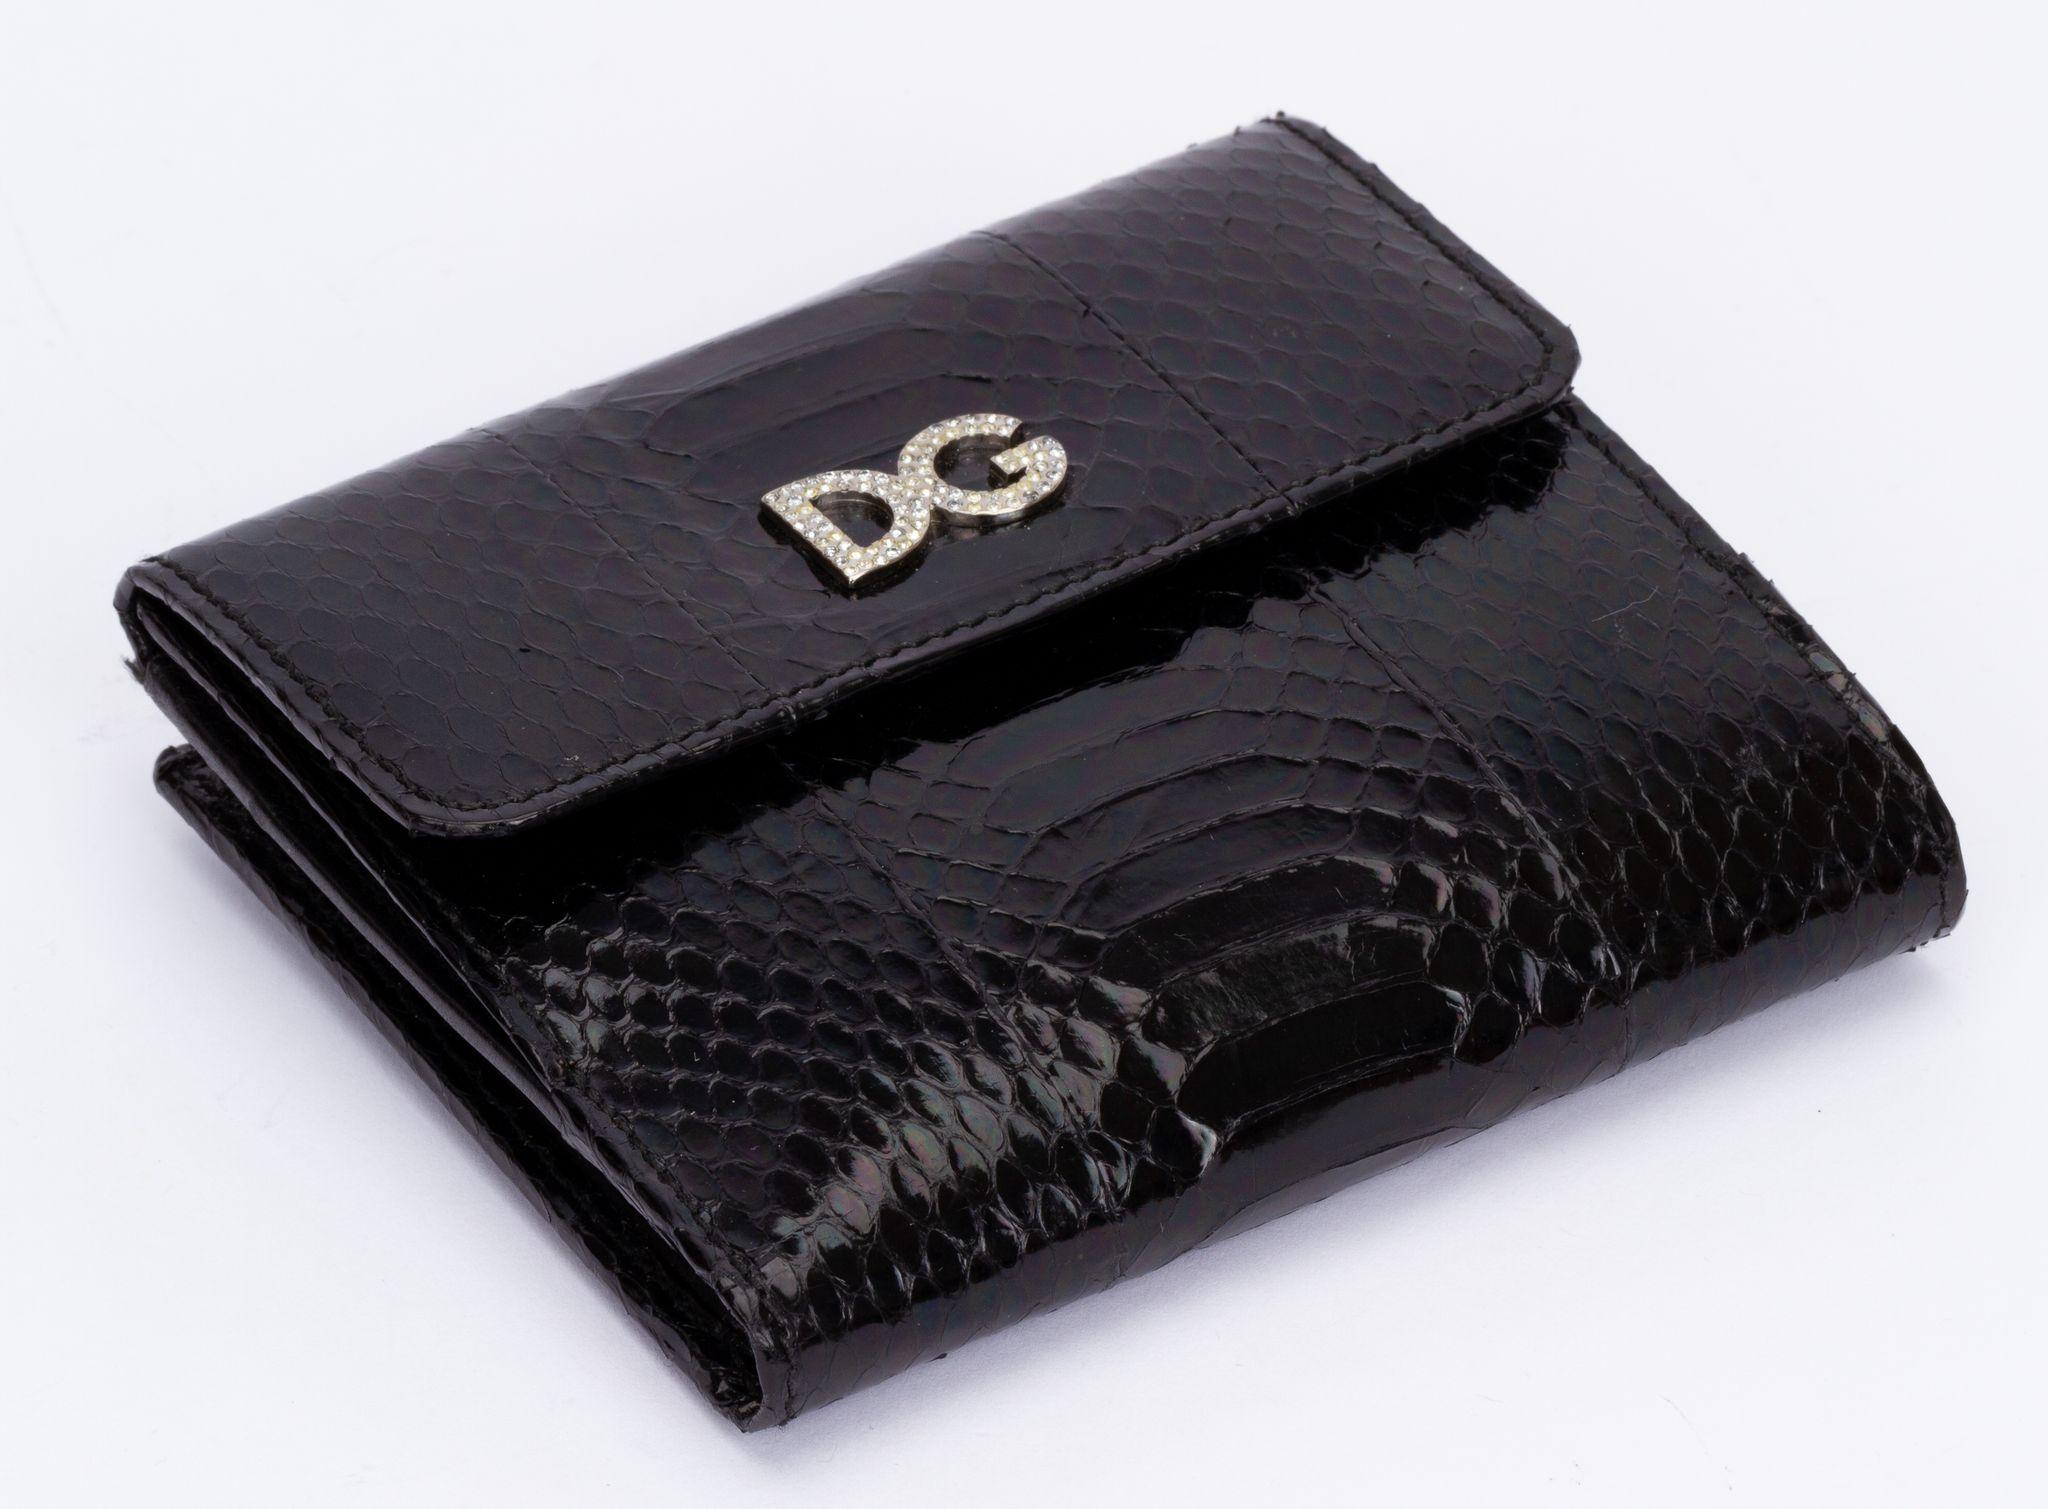 Dolce & Gabbana Geldbörse in Schwarz aus Pythonleder. Auf der Vorderseite befindet sich ein DG-Logo mit kleinen Kristallen. Sie wird mit einem Druckknopf geschlossen. Die Innenseite ist mit mehreren Kartenfächern und einer Reißverschlusstasche sowie